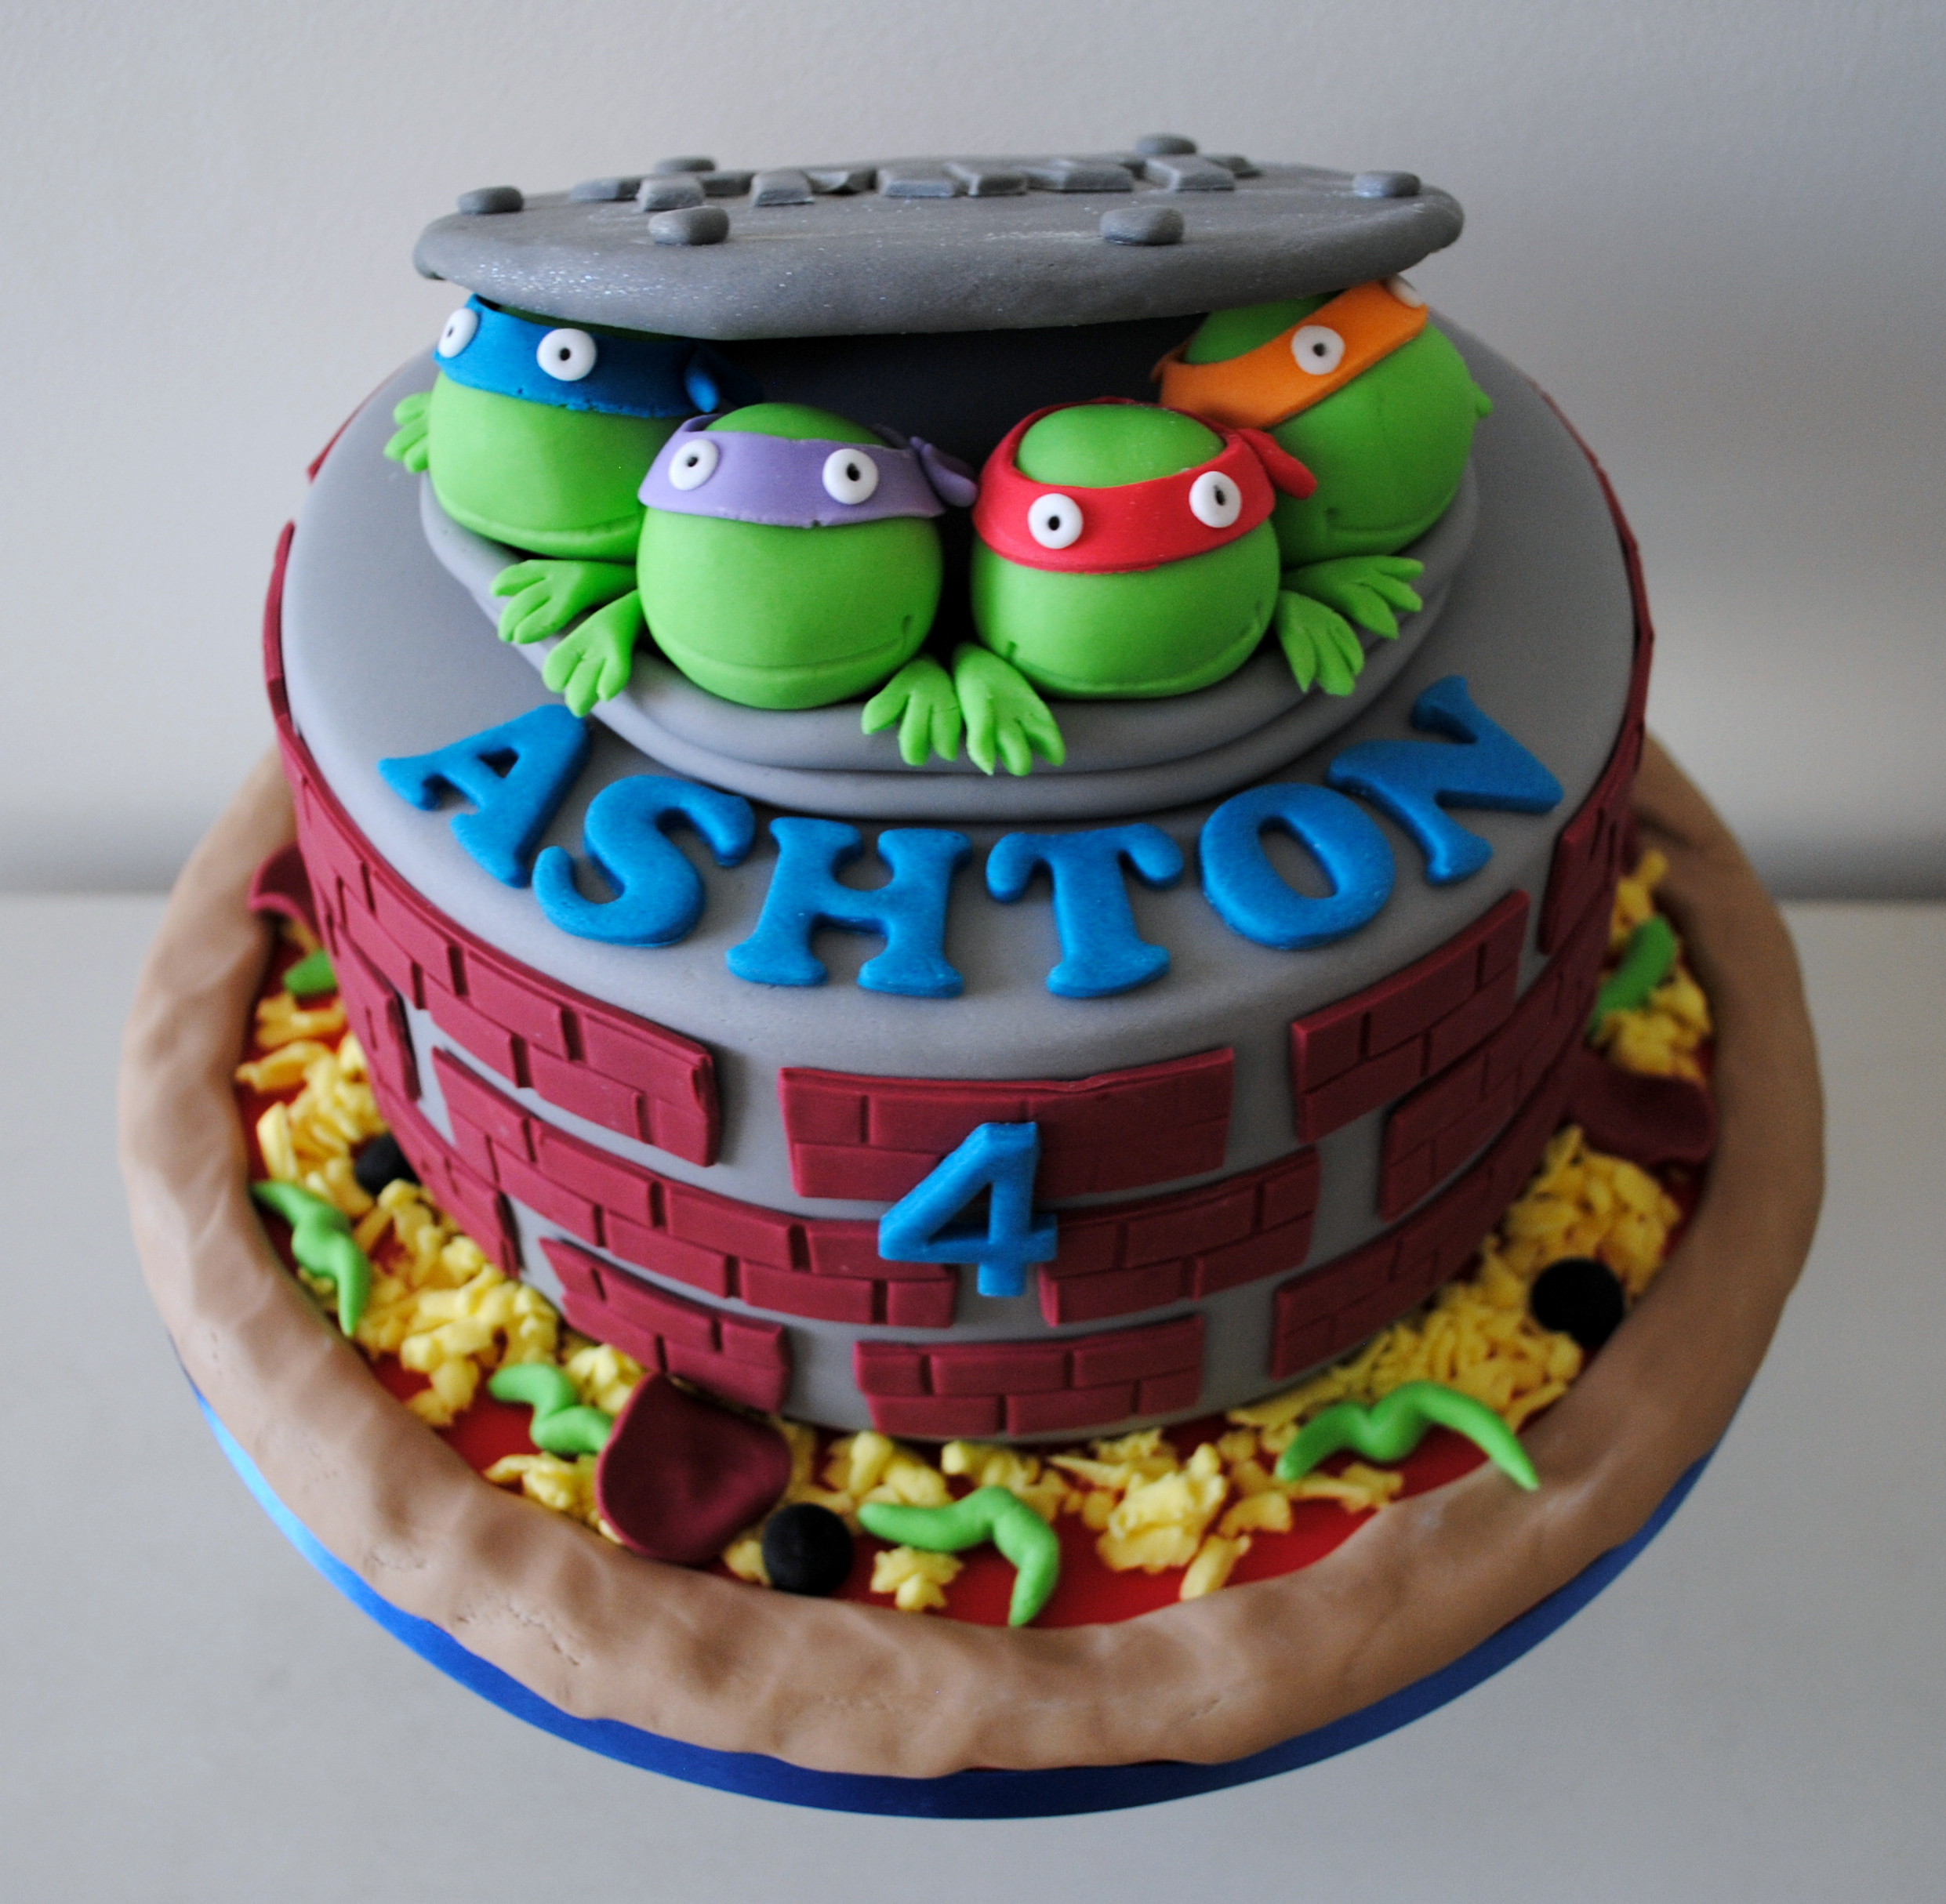 Ninja Turtle Birthday Cakes
 Miss Cupcakes Blog Archive Teenage mutant ninja turtle